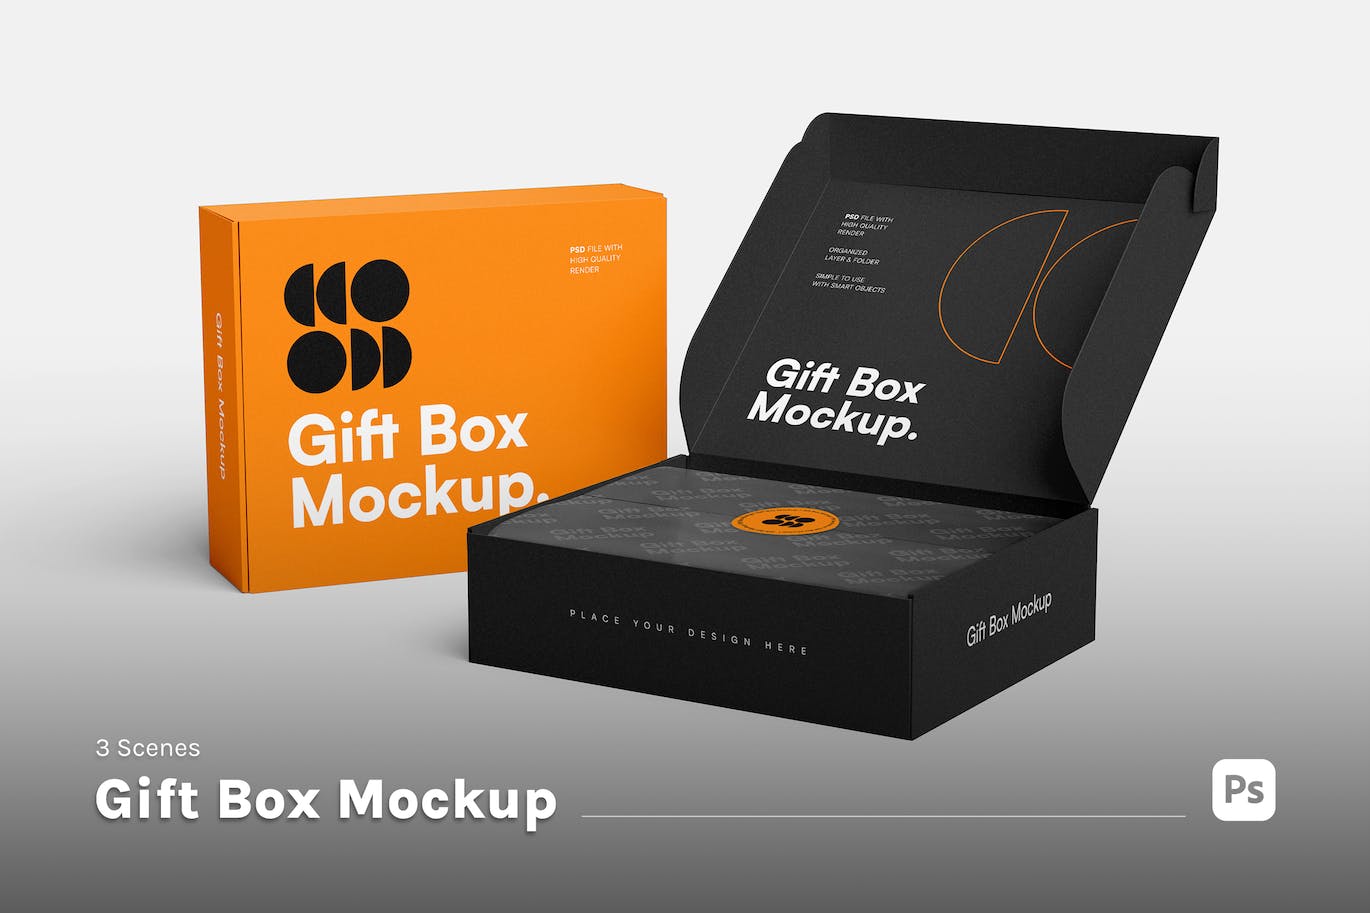 礼品盒设计样机模板 Gift Box Mockup 样机素材 第1张